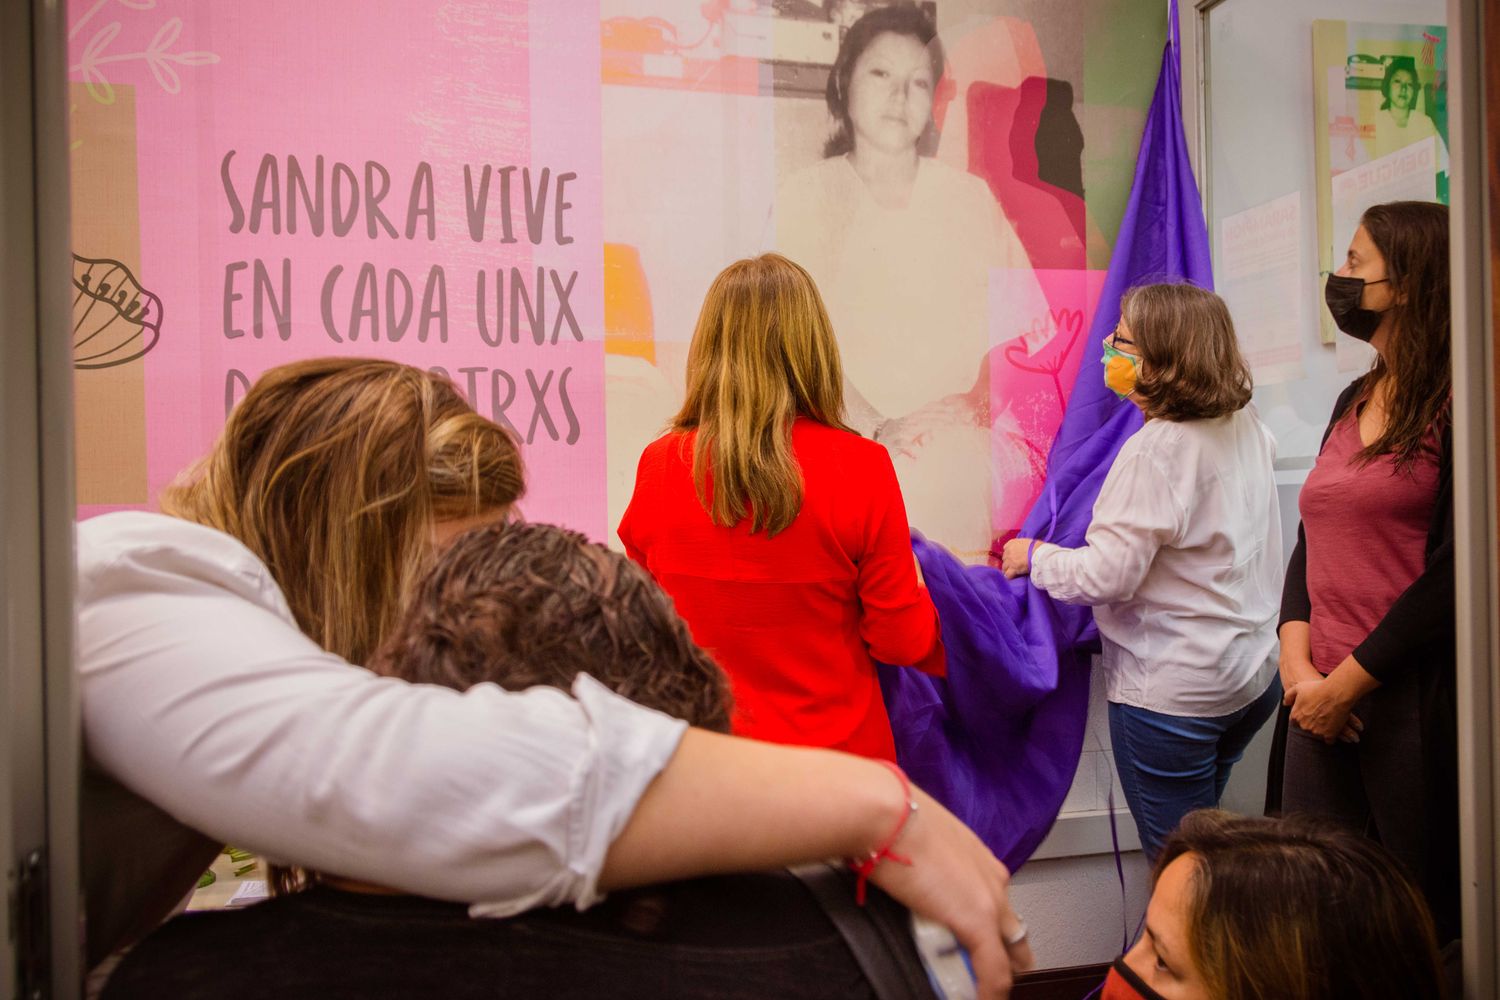 Inauguraron un mural en memoria de Sandra Ayala Gamboa al cumplirse 15 años de su femicidio en La Plata